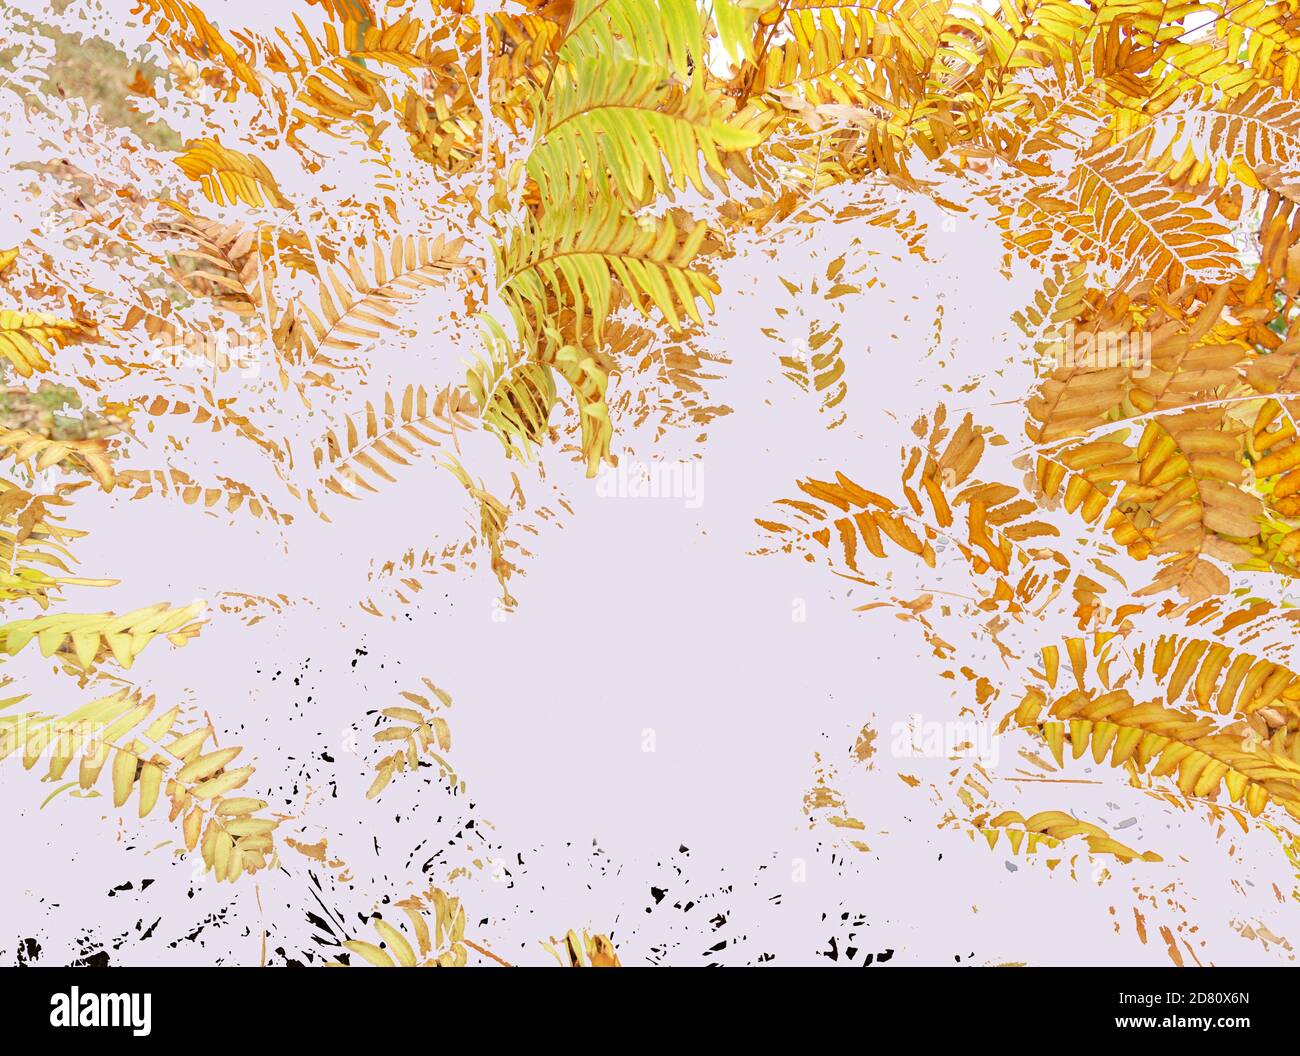 Digitale Illustration aus Skizze der Herbstfarnblätter. Kopierbereich, weißer Hintergrund, horizontale Komposition. Stockfoto